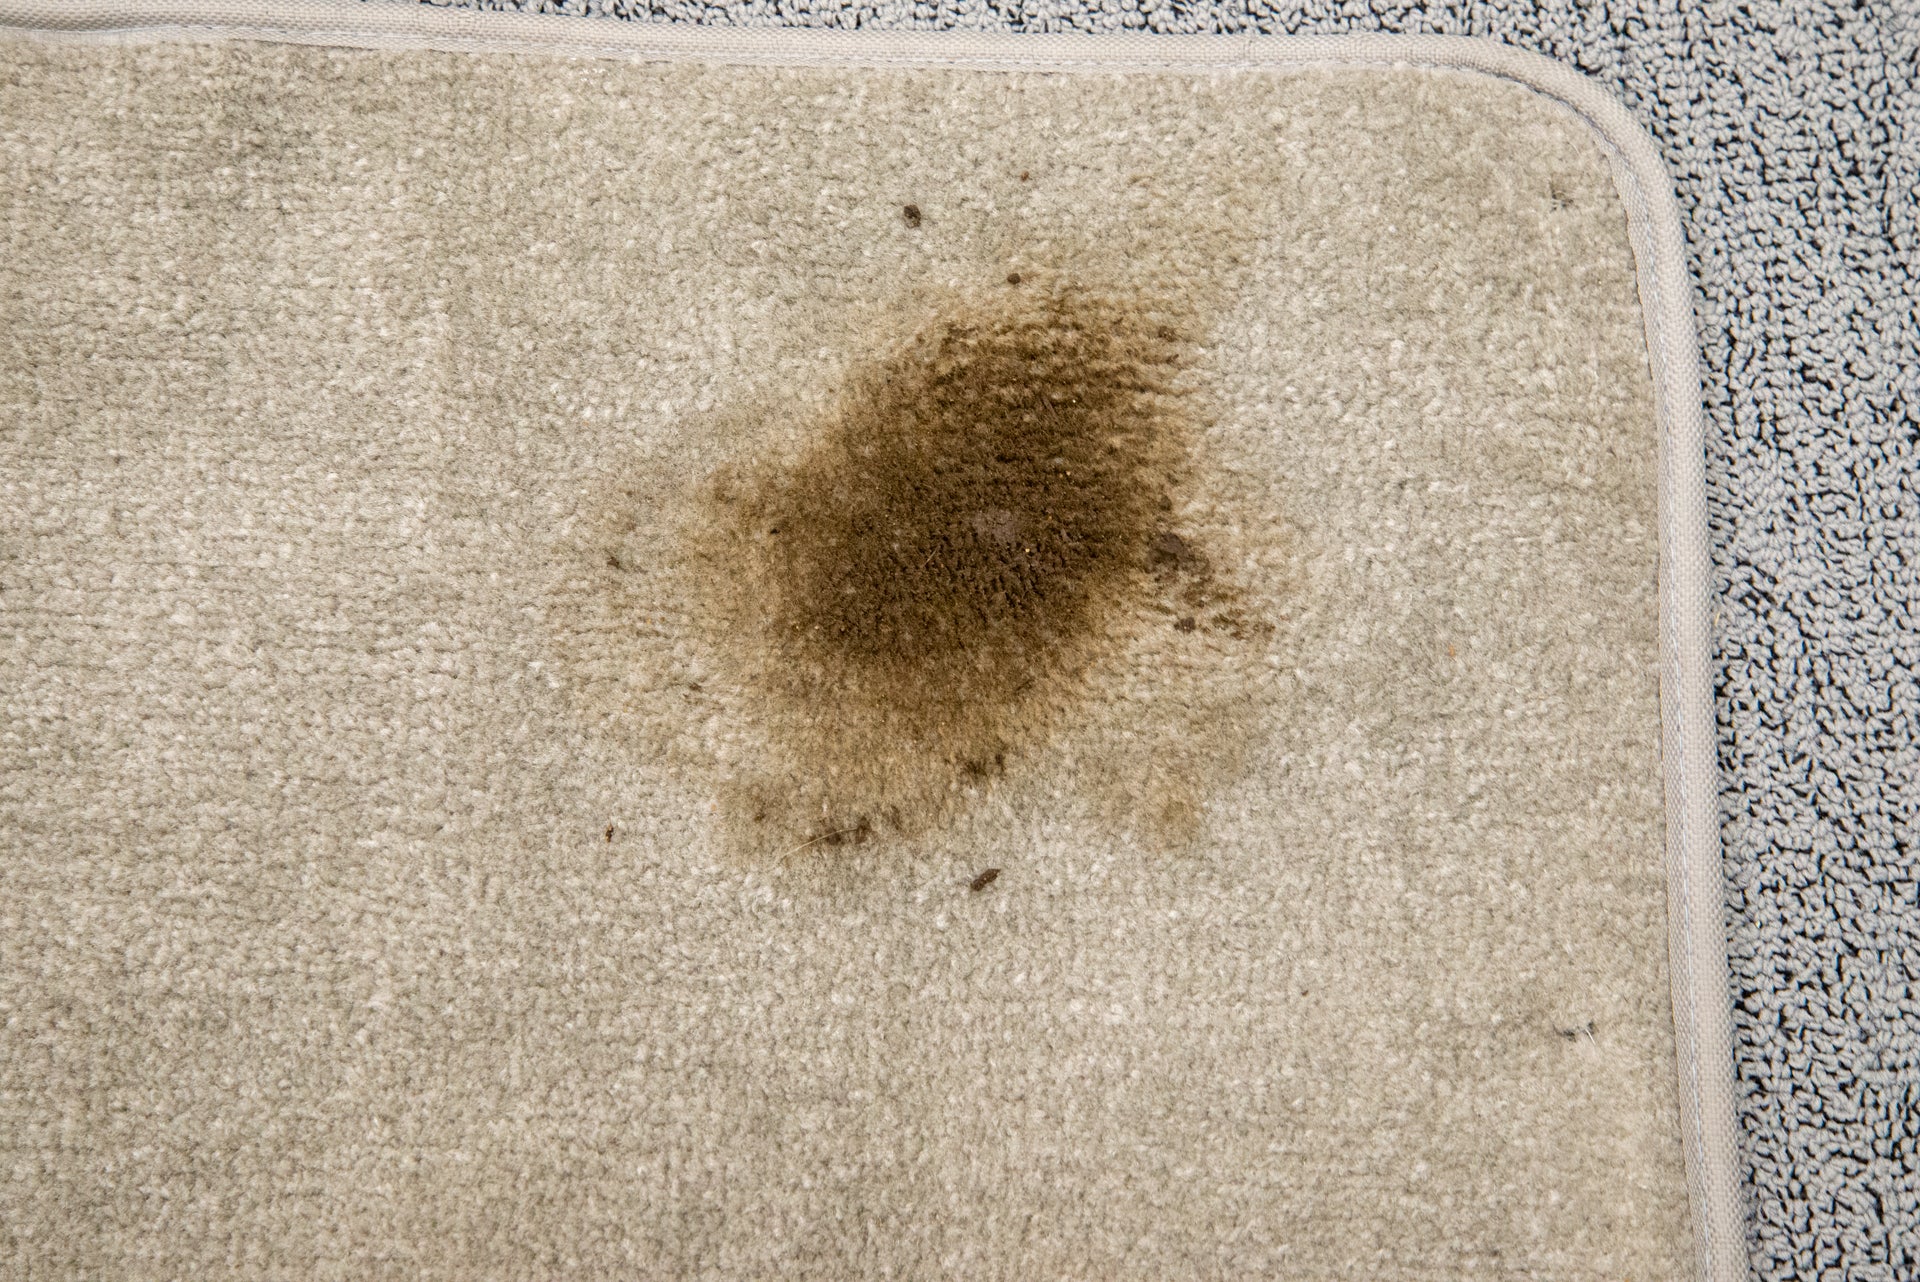 A mat on a carpet with a brown dirt spot